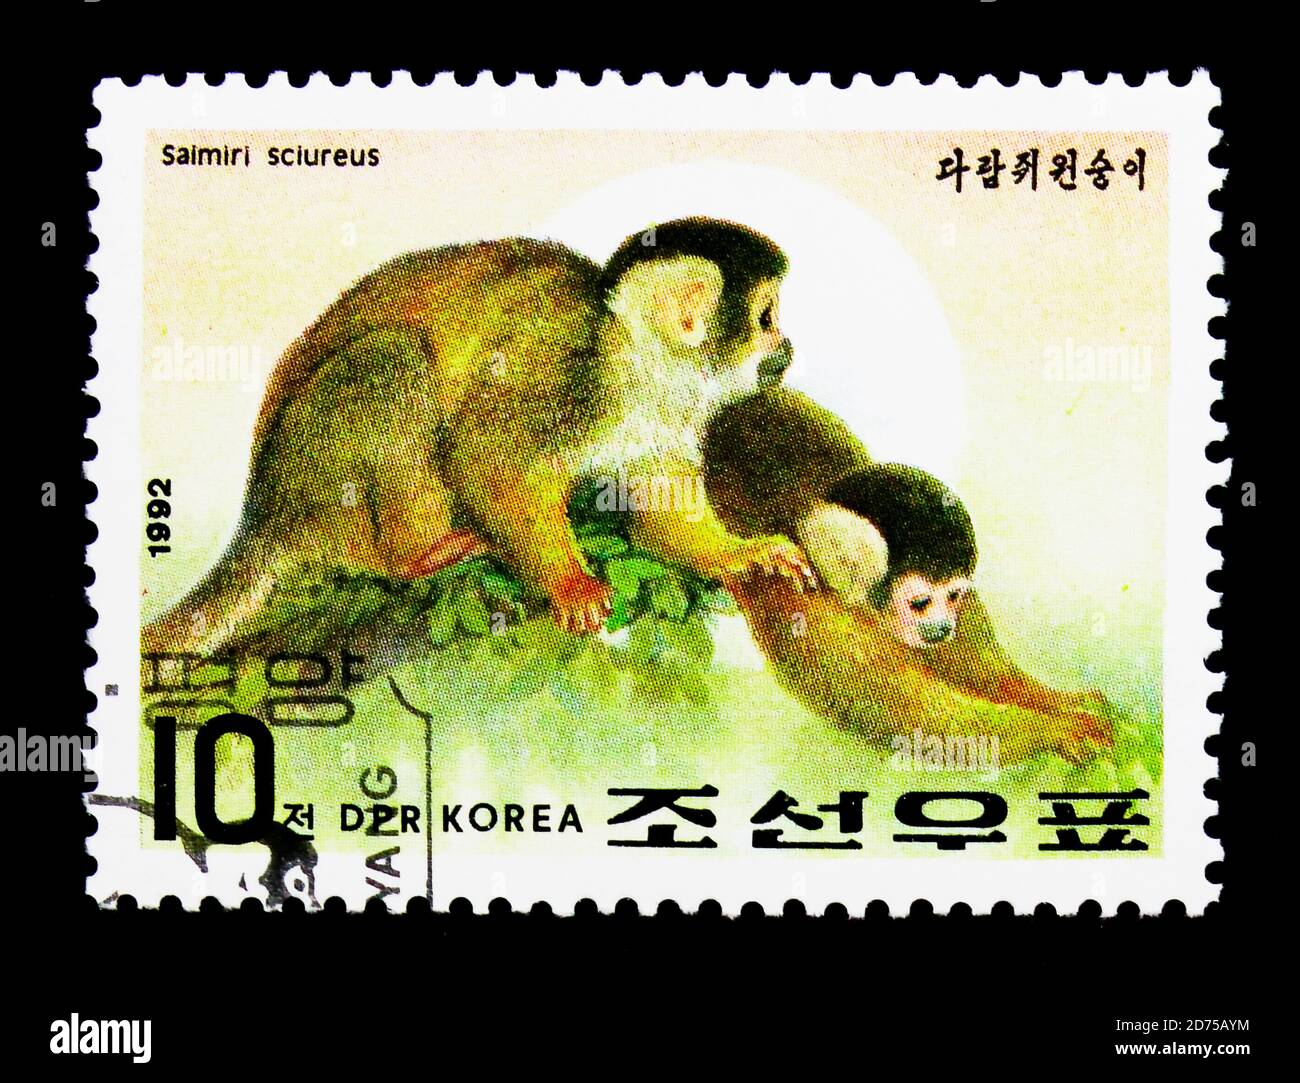 MOSCOU, RUSSIE - 25 NOVEMBRE 2017 : un timbre imprimé en république populaire démocratique de Corée montre le singe commun d'écureuil (Saimiri sciurus), année de Banque D'Images